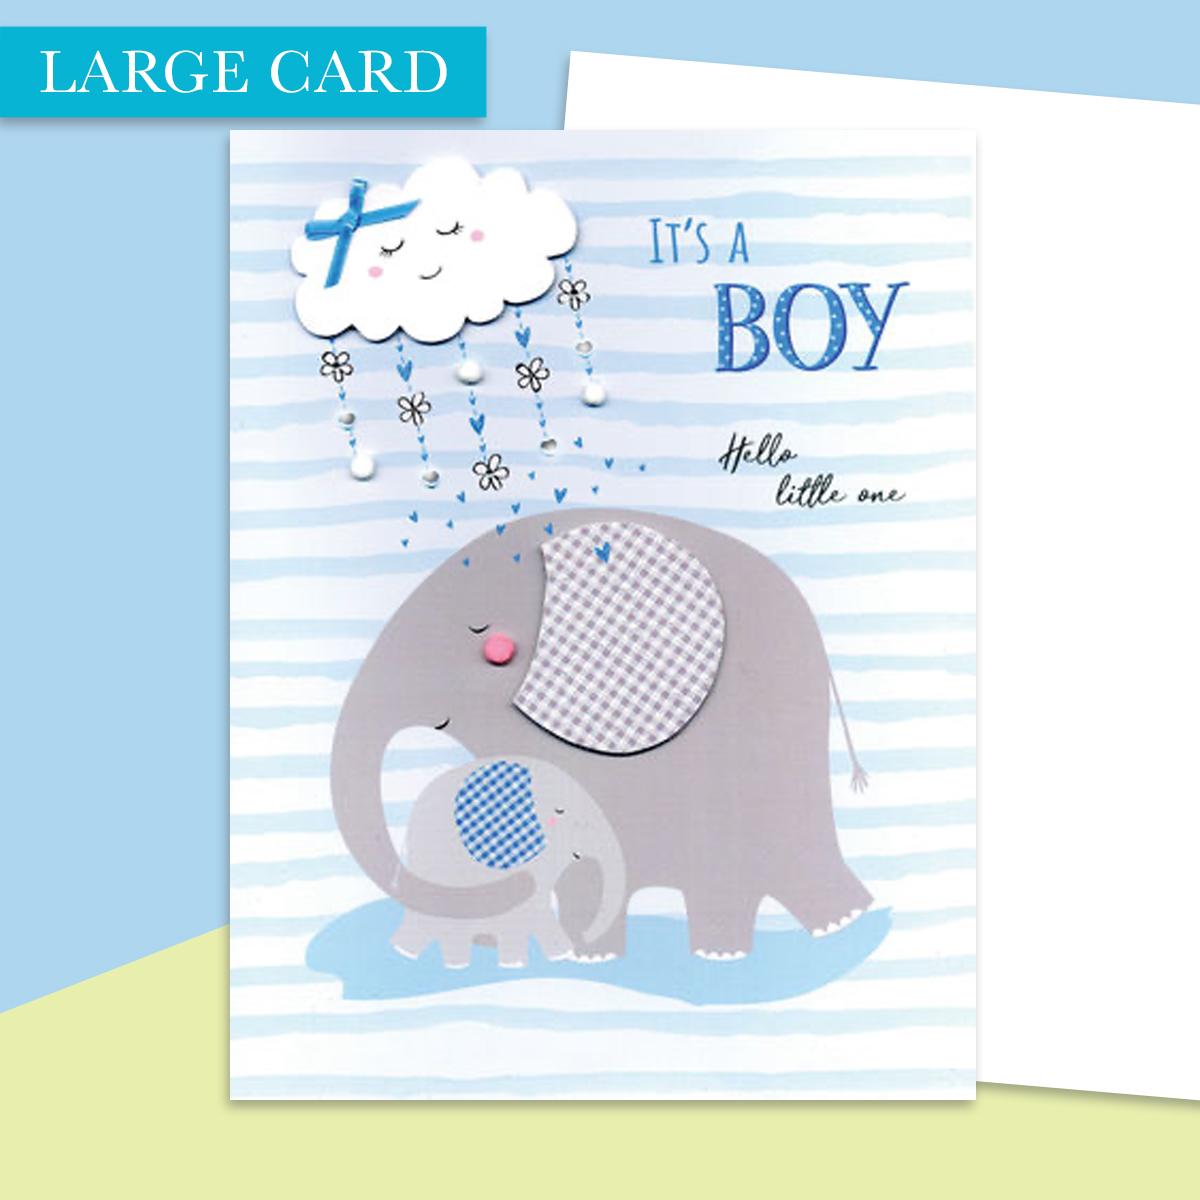 Baby Boy Large Card Alongside its White Envelope